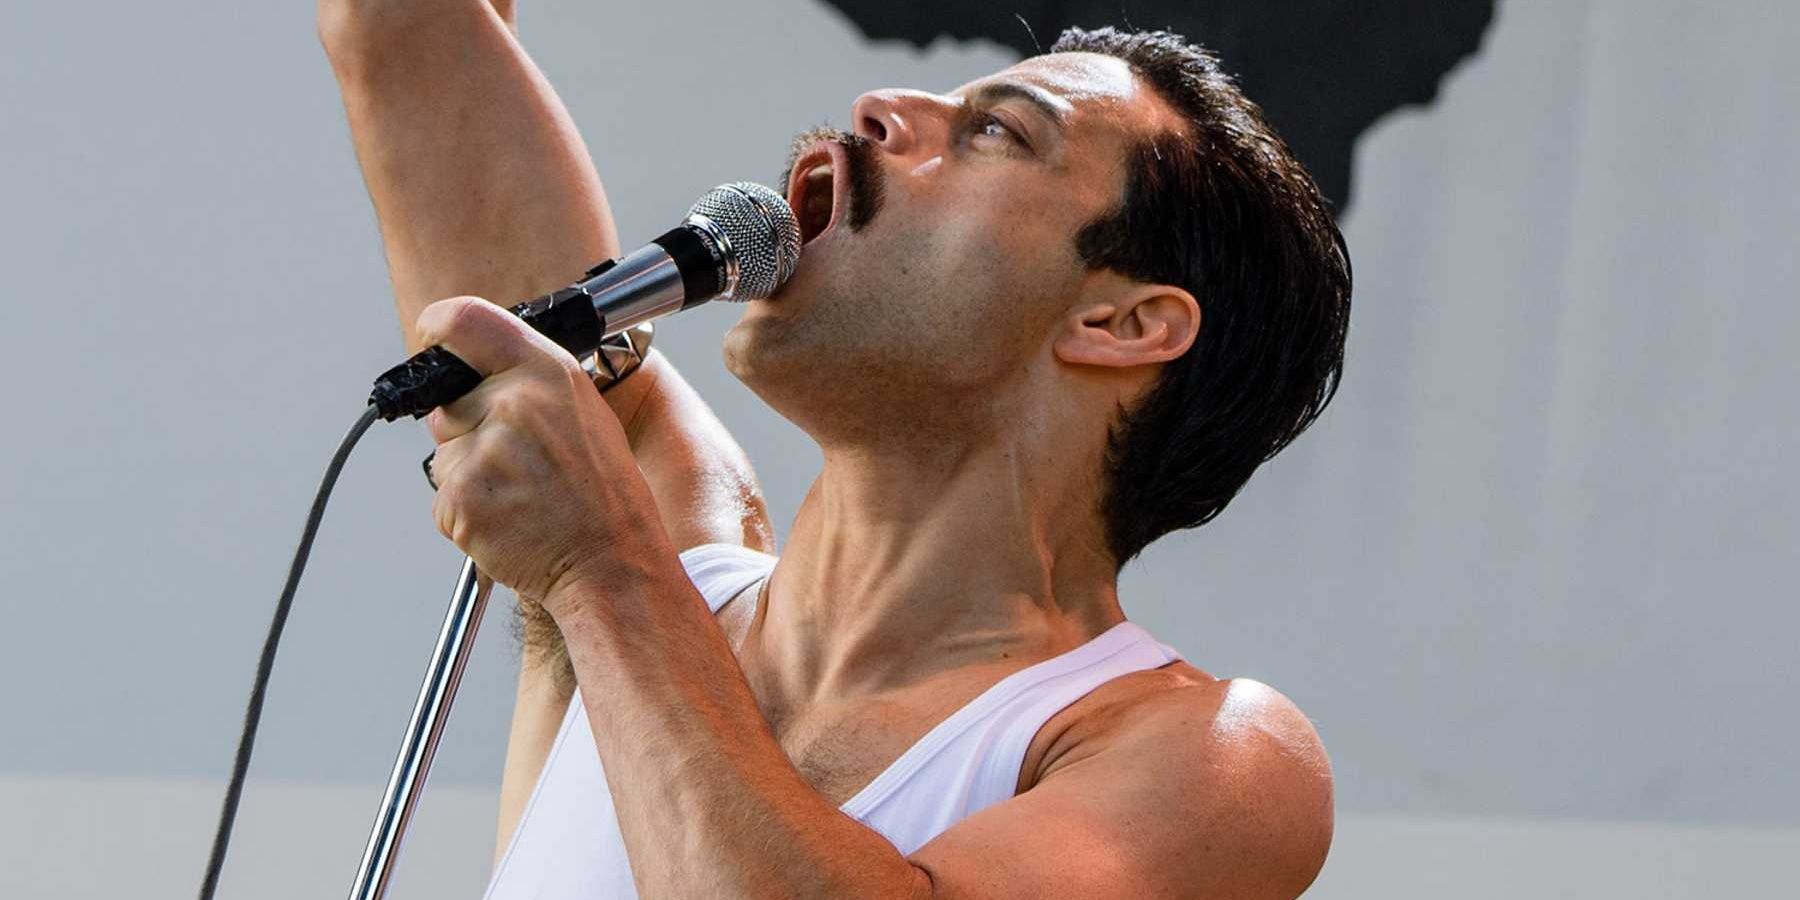 Bohemian Rhapsody, Official Trailer [HD]